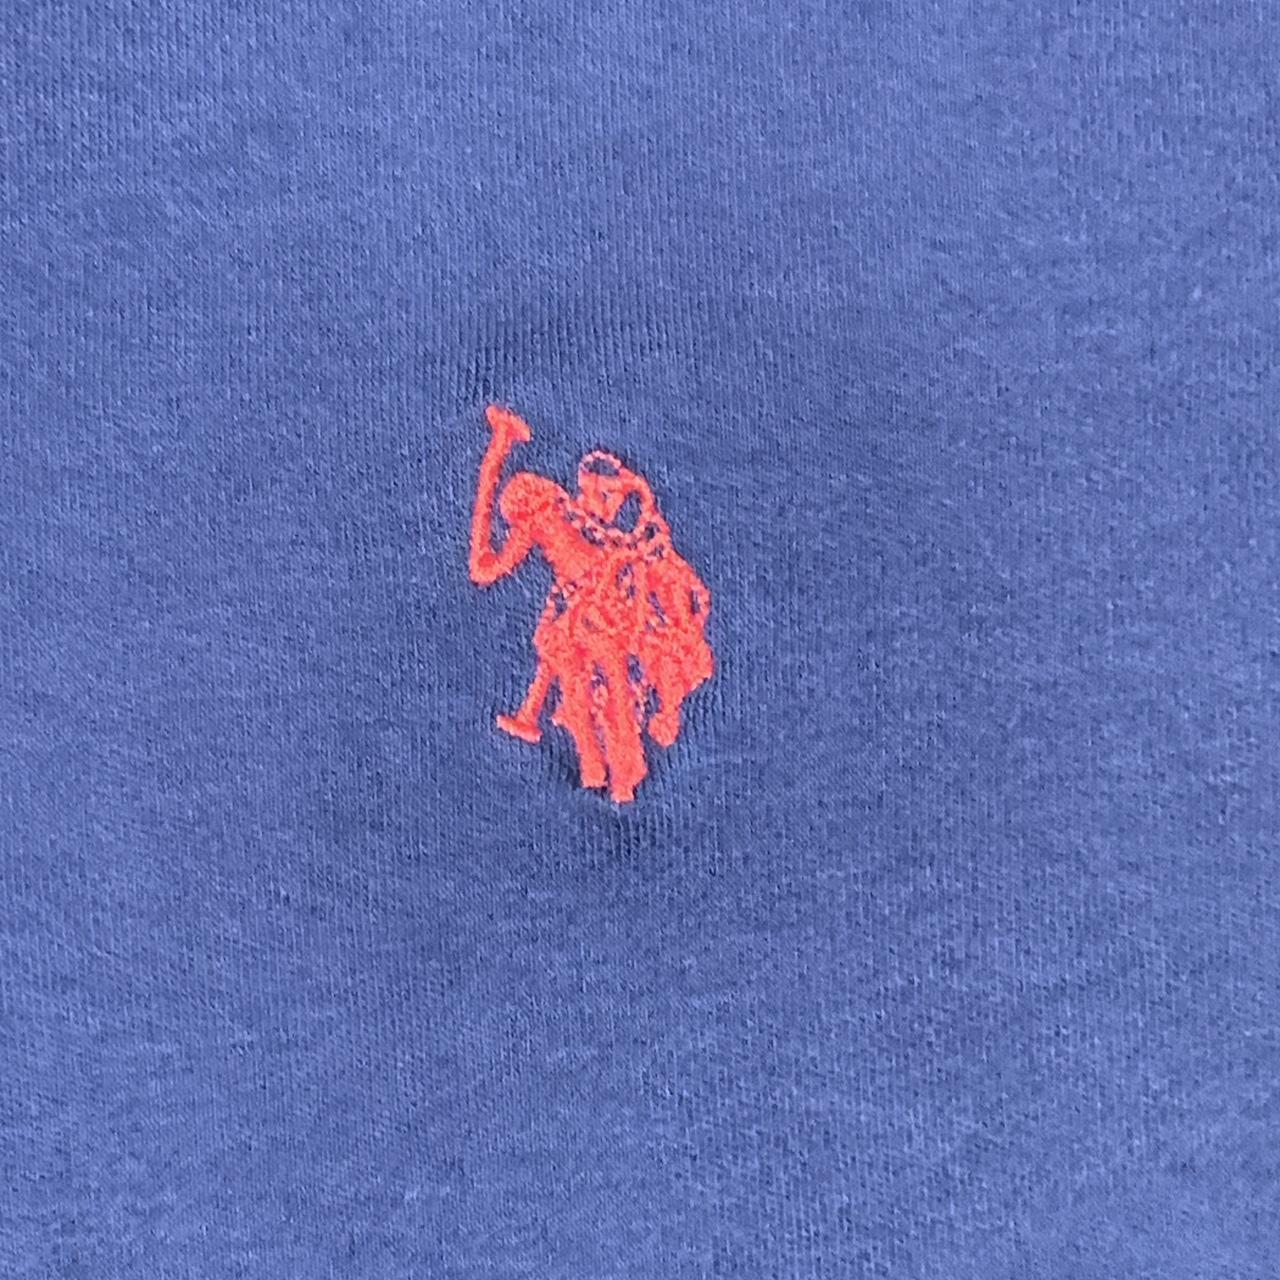 Polo Ralph Lauren Polo shirt Navy blue/ red... - Depop